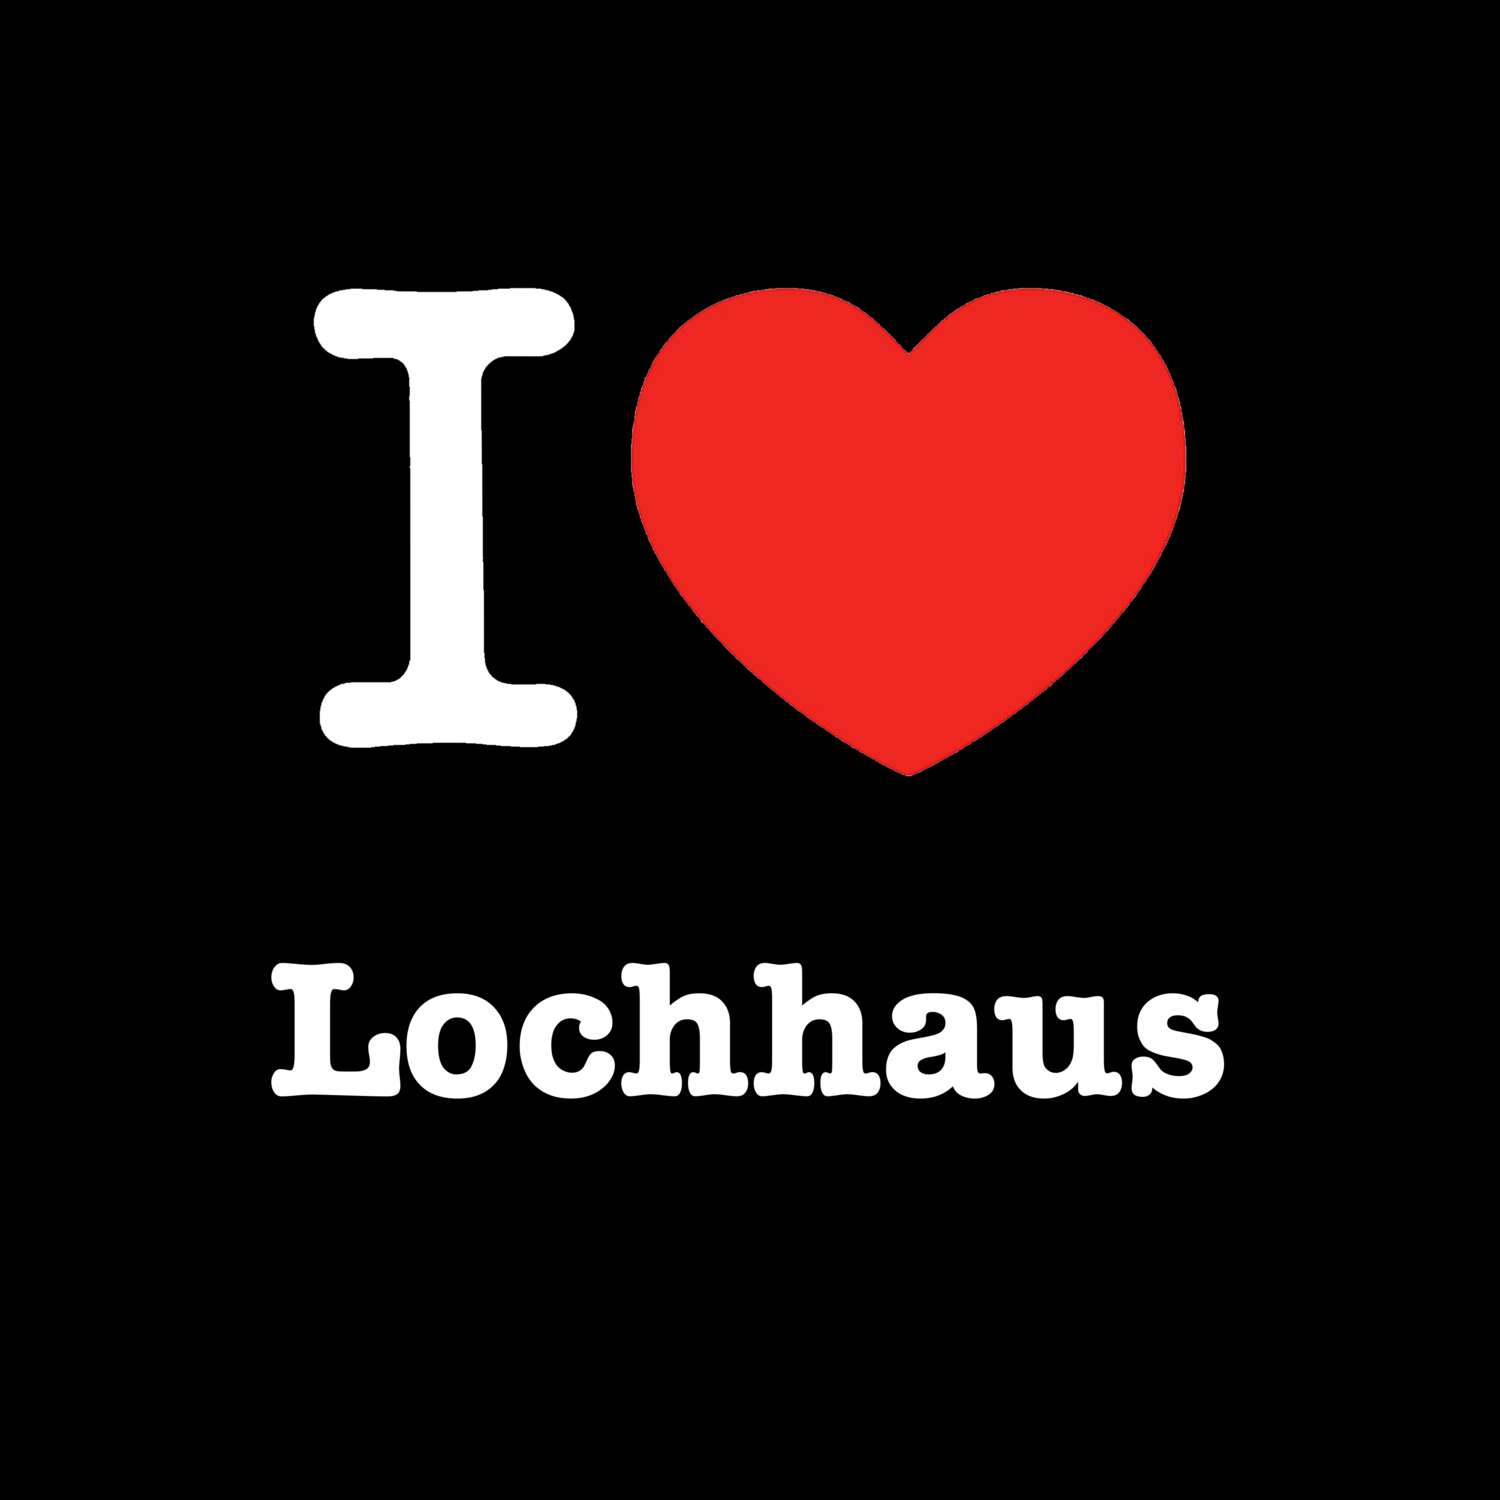 Lochhaus T-Shirt »I love«